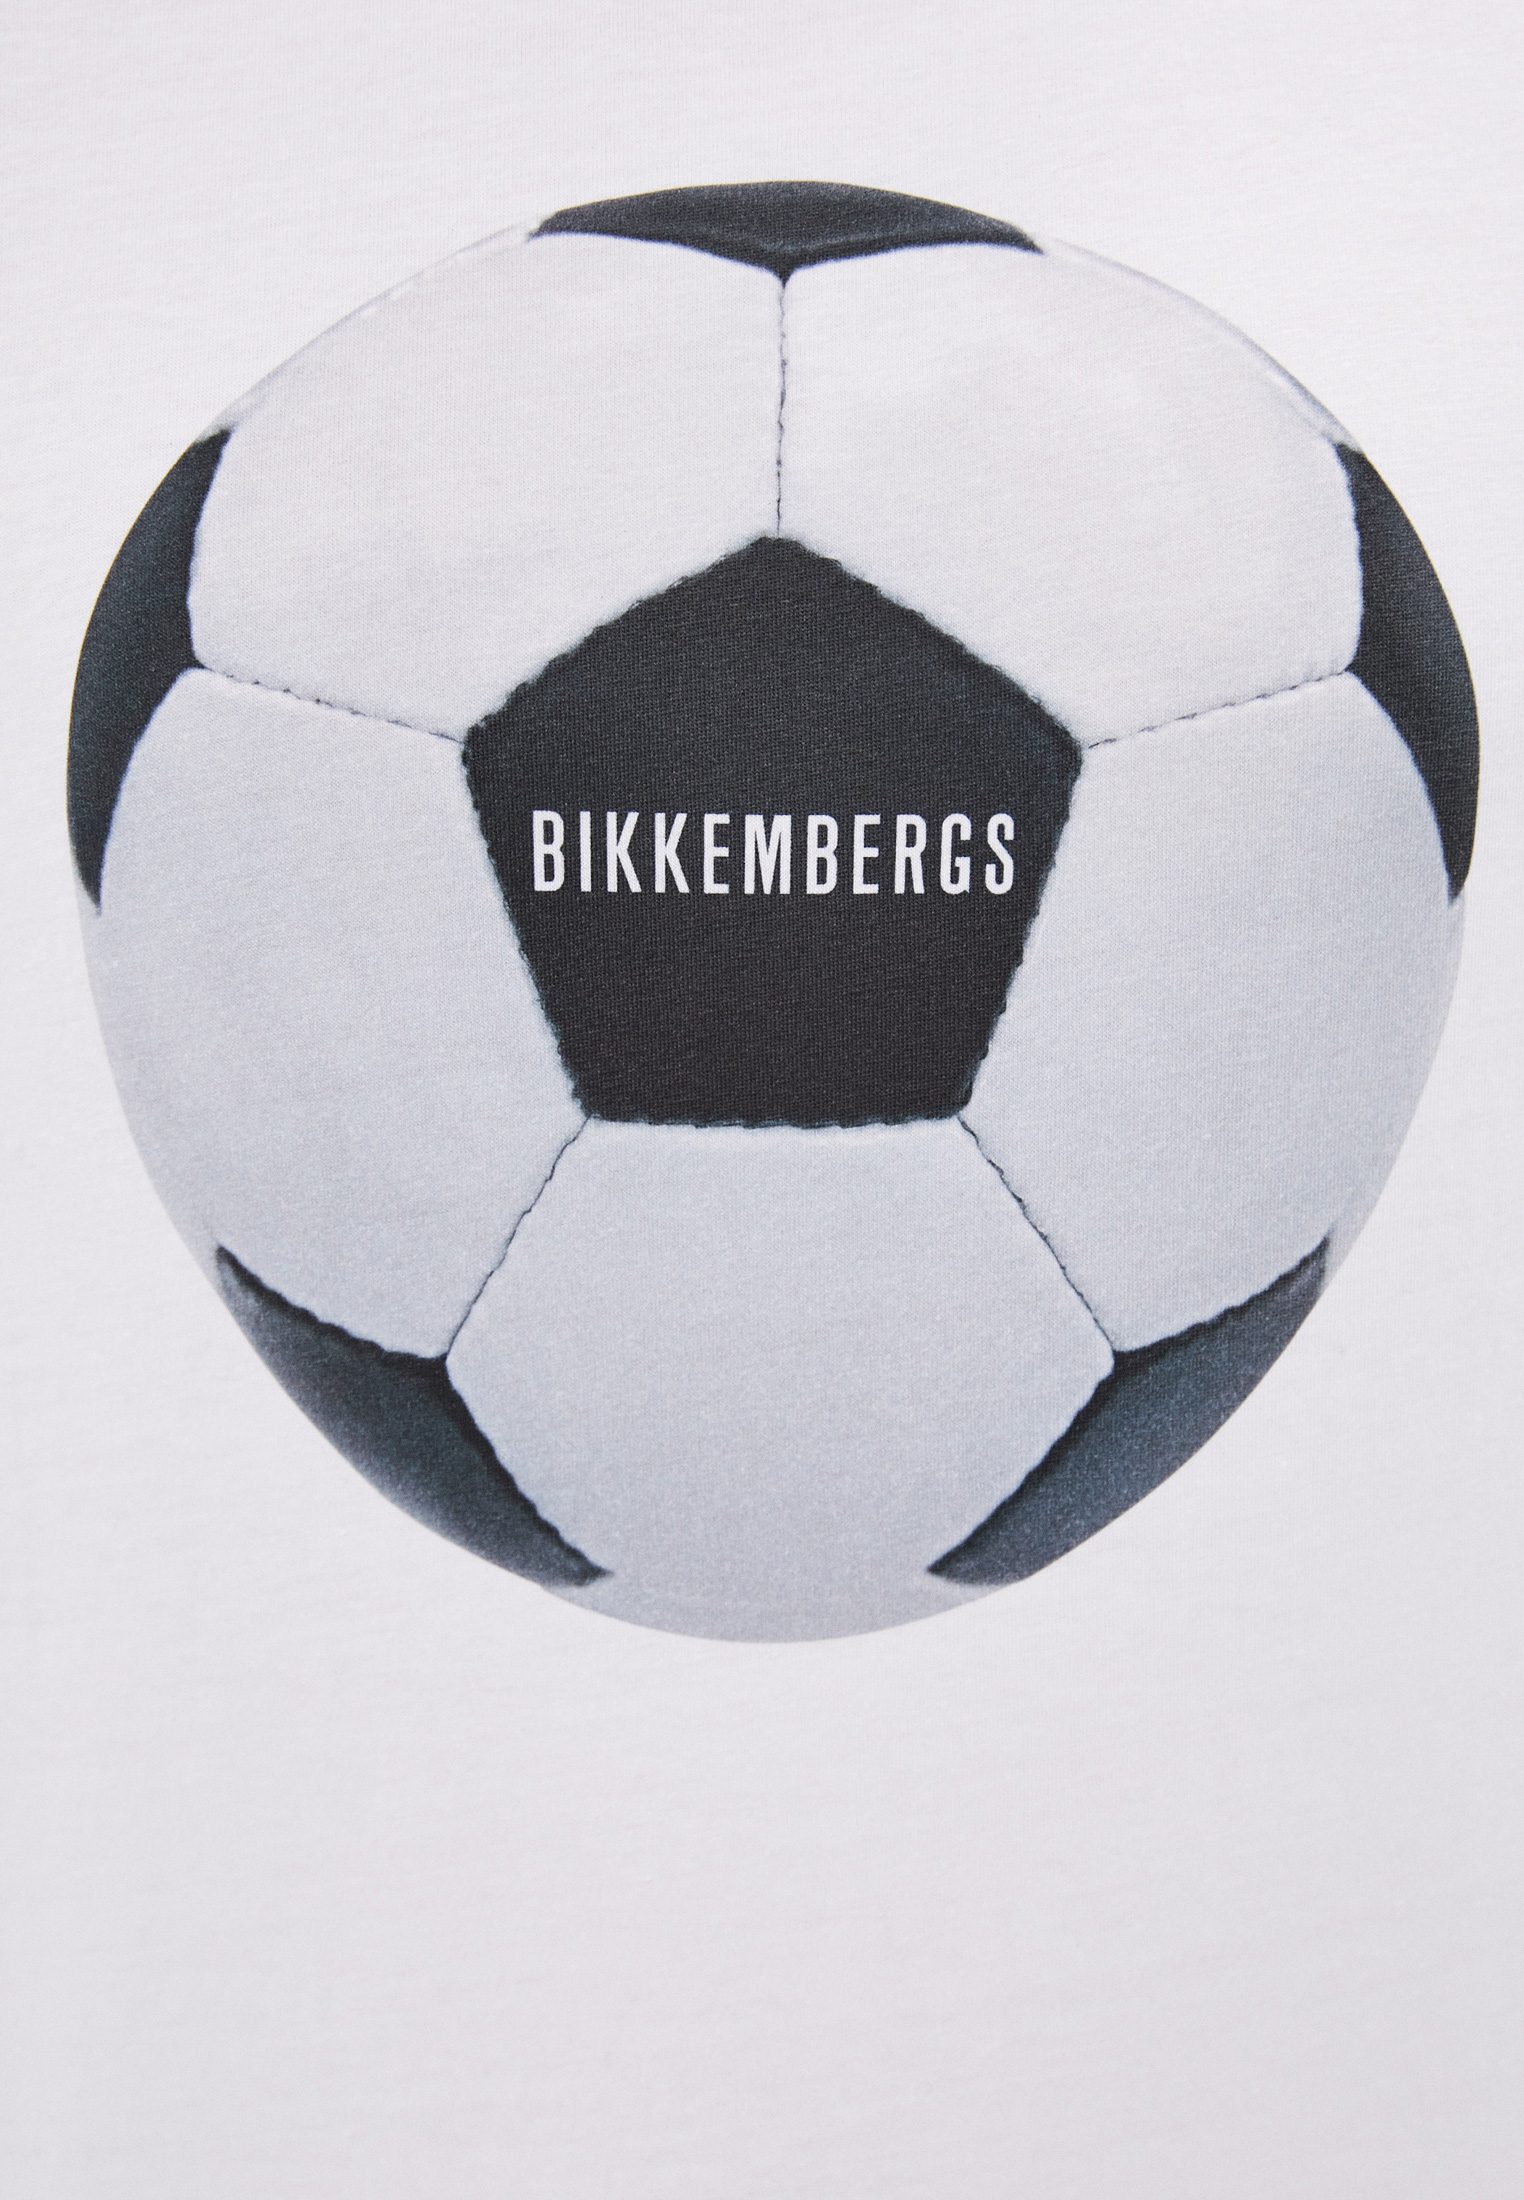 Мужская футболка Bikkembergs (Биккембергс) C 4 101 17 E 1811: изображение 10